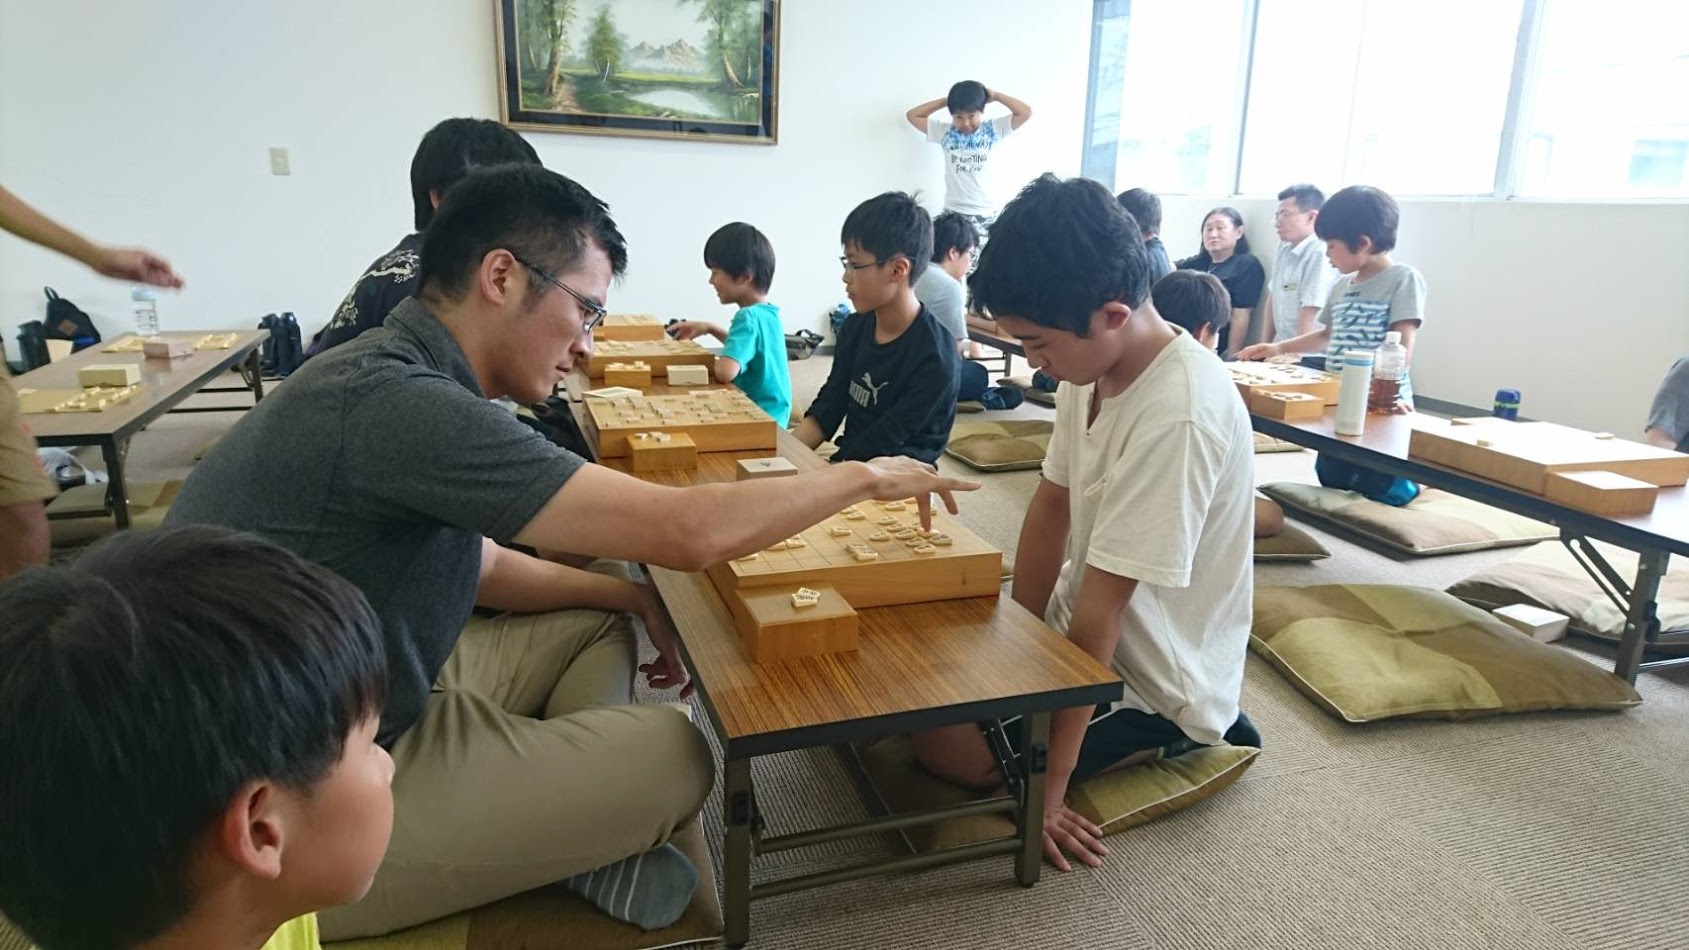 福井市の木田にある将棋教室に行ってみた。